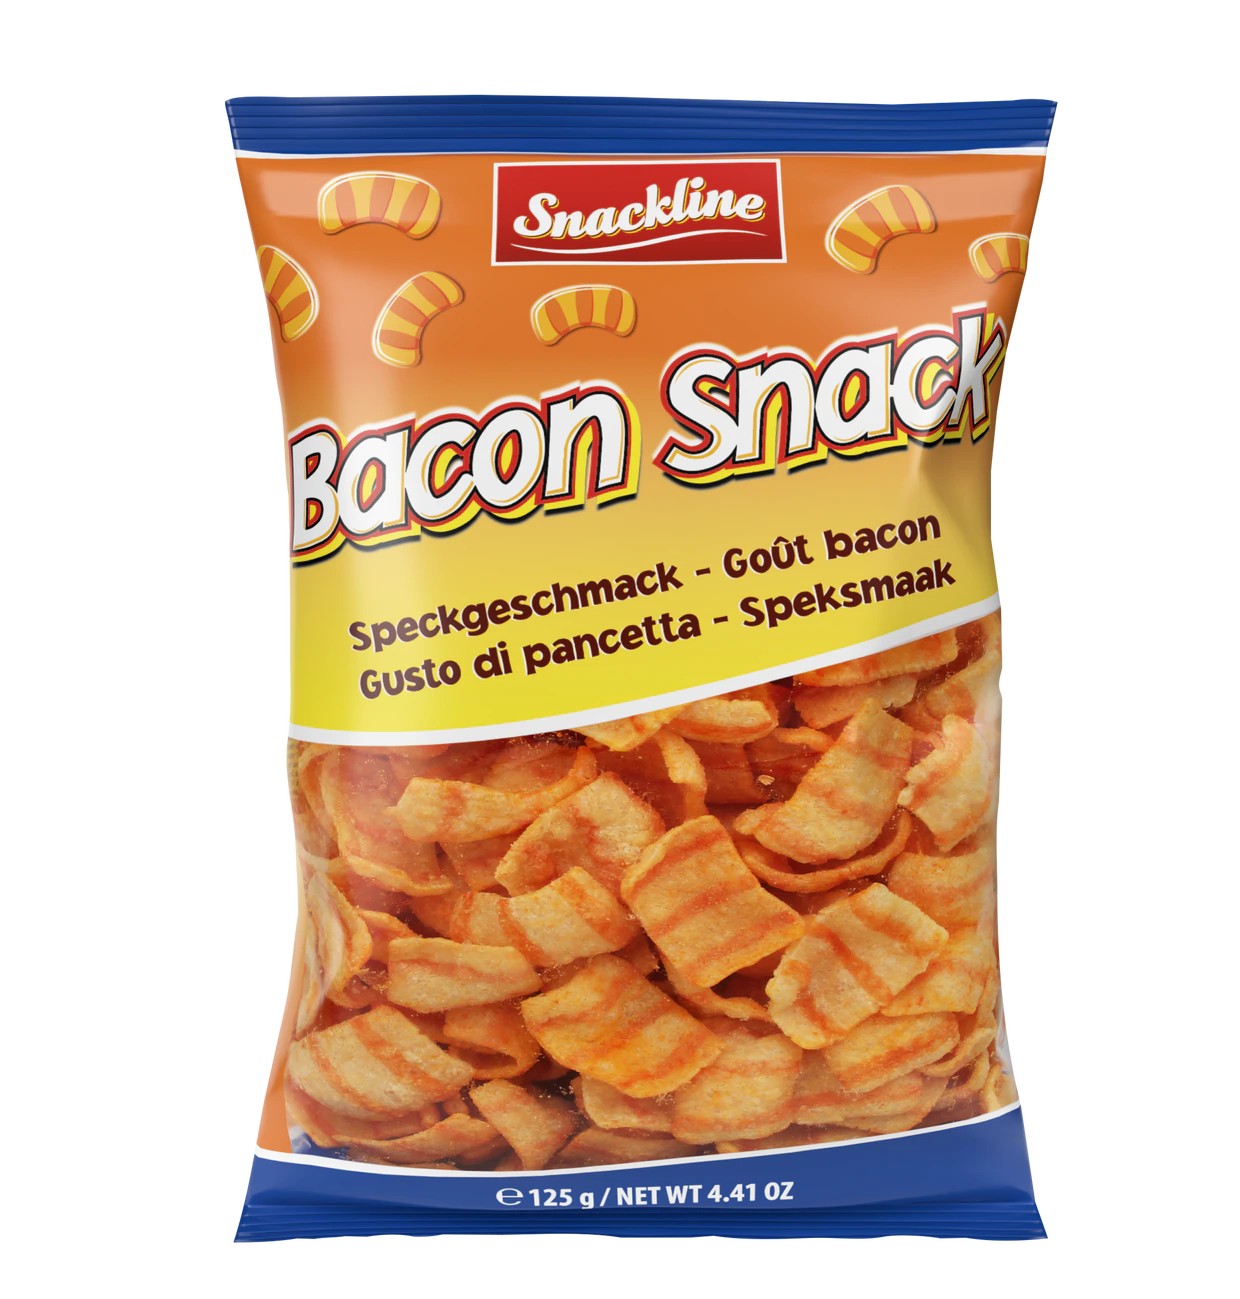 Snackline Bacon Snack